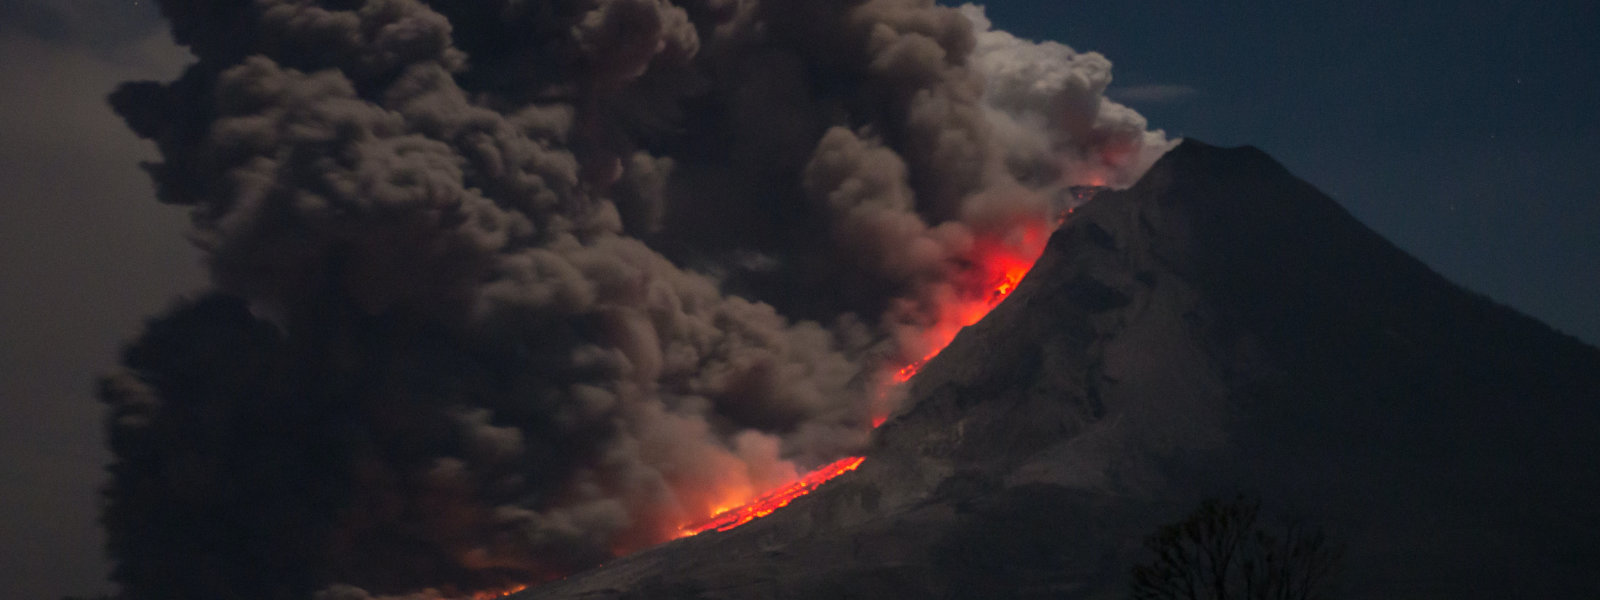 Eruption of Mt.Darvus cover